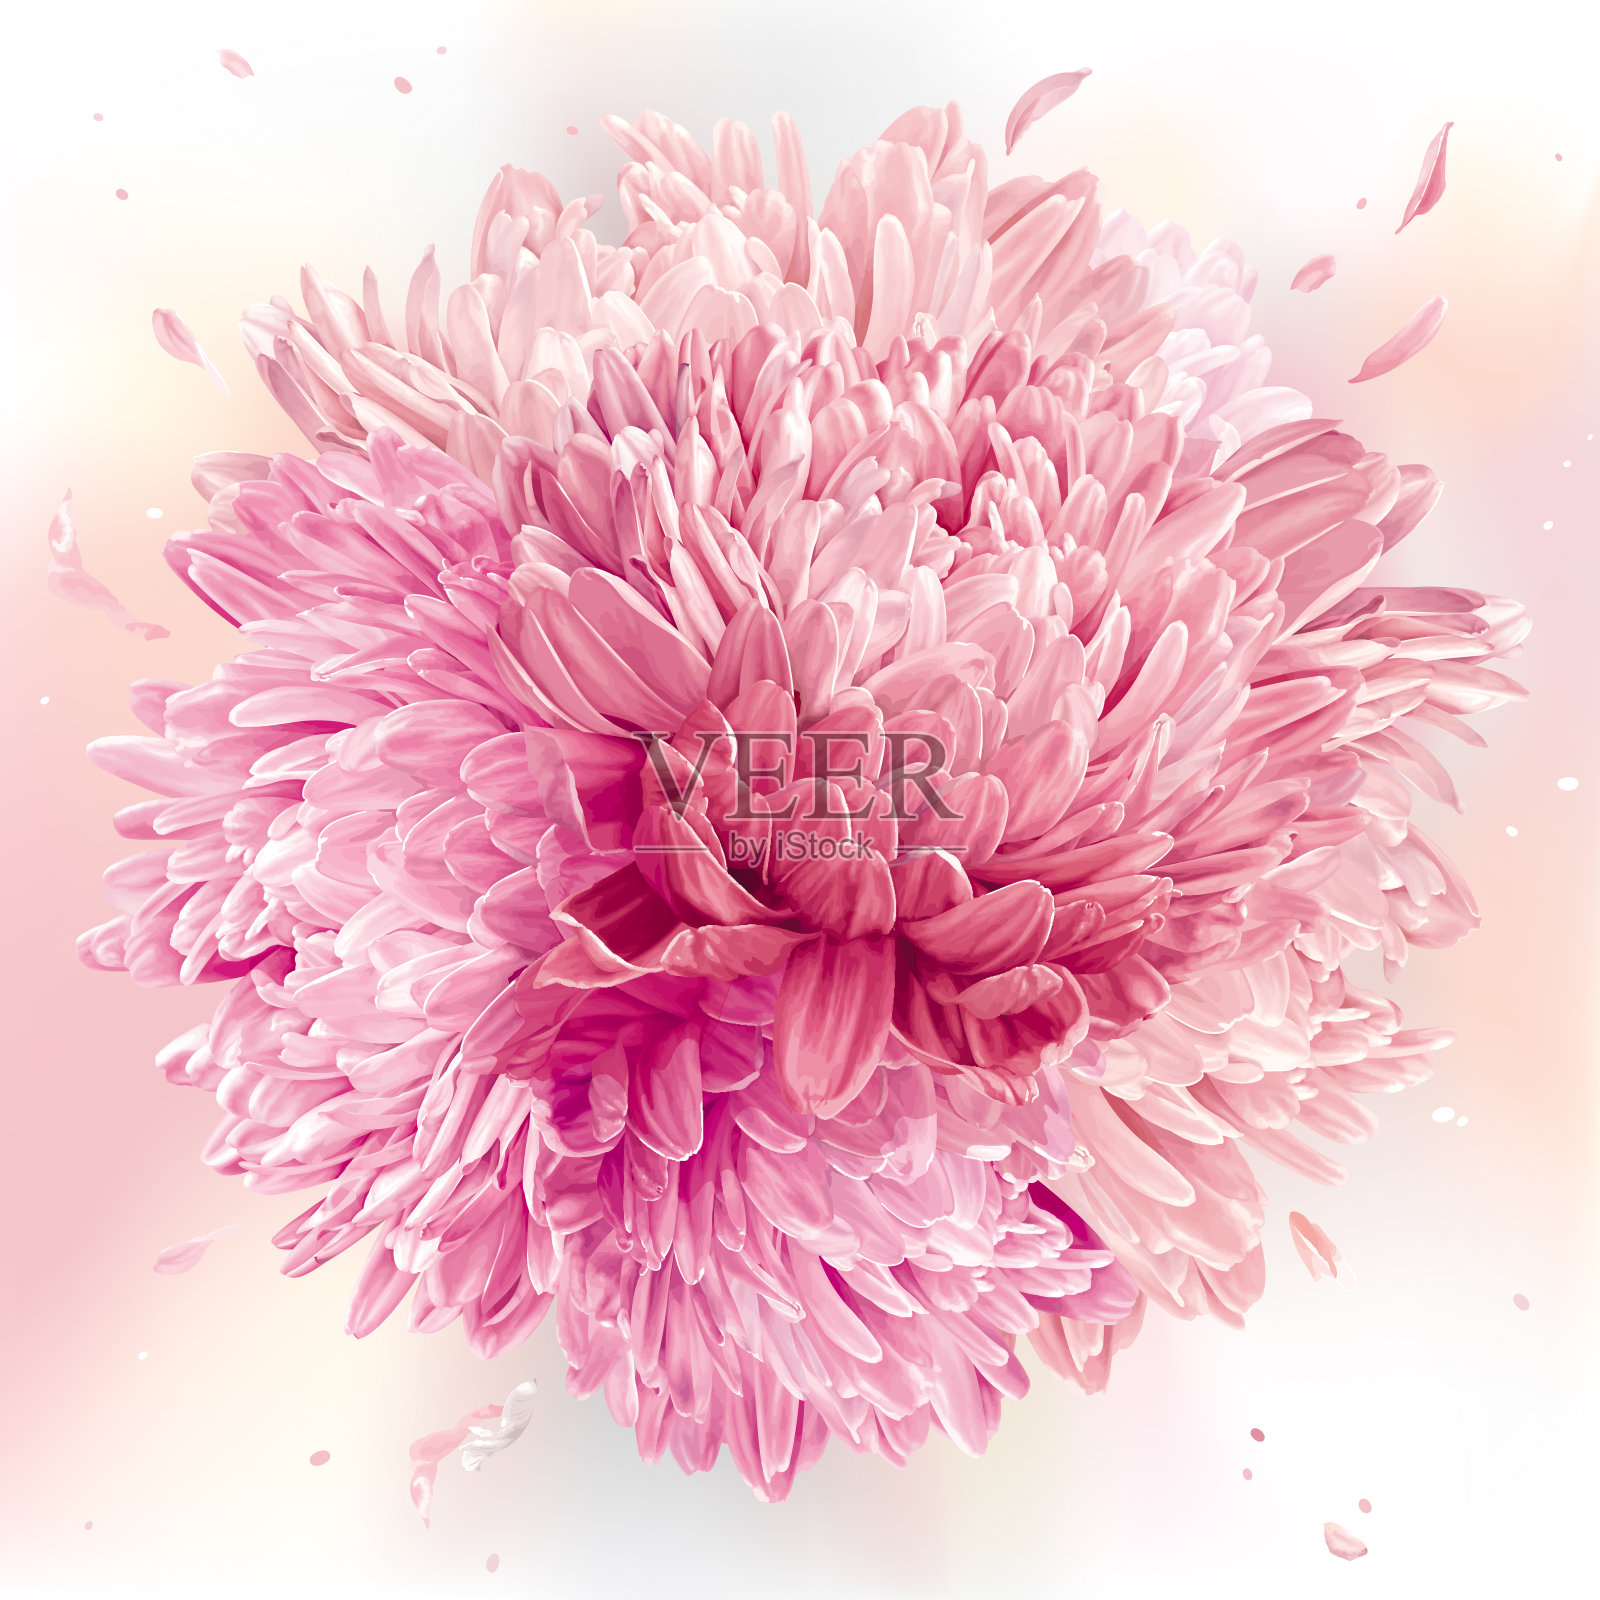 粉红色的菊花球体插画图片素材